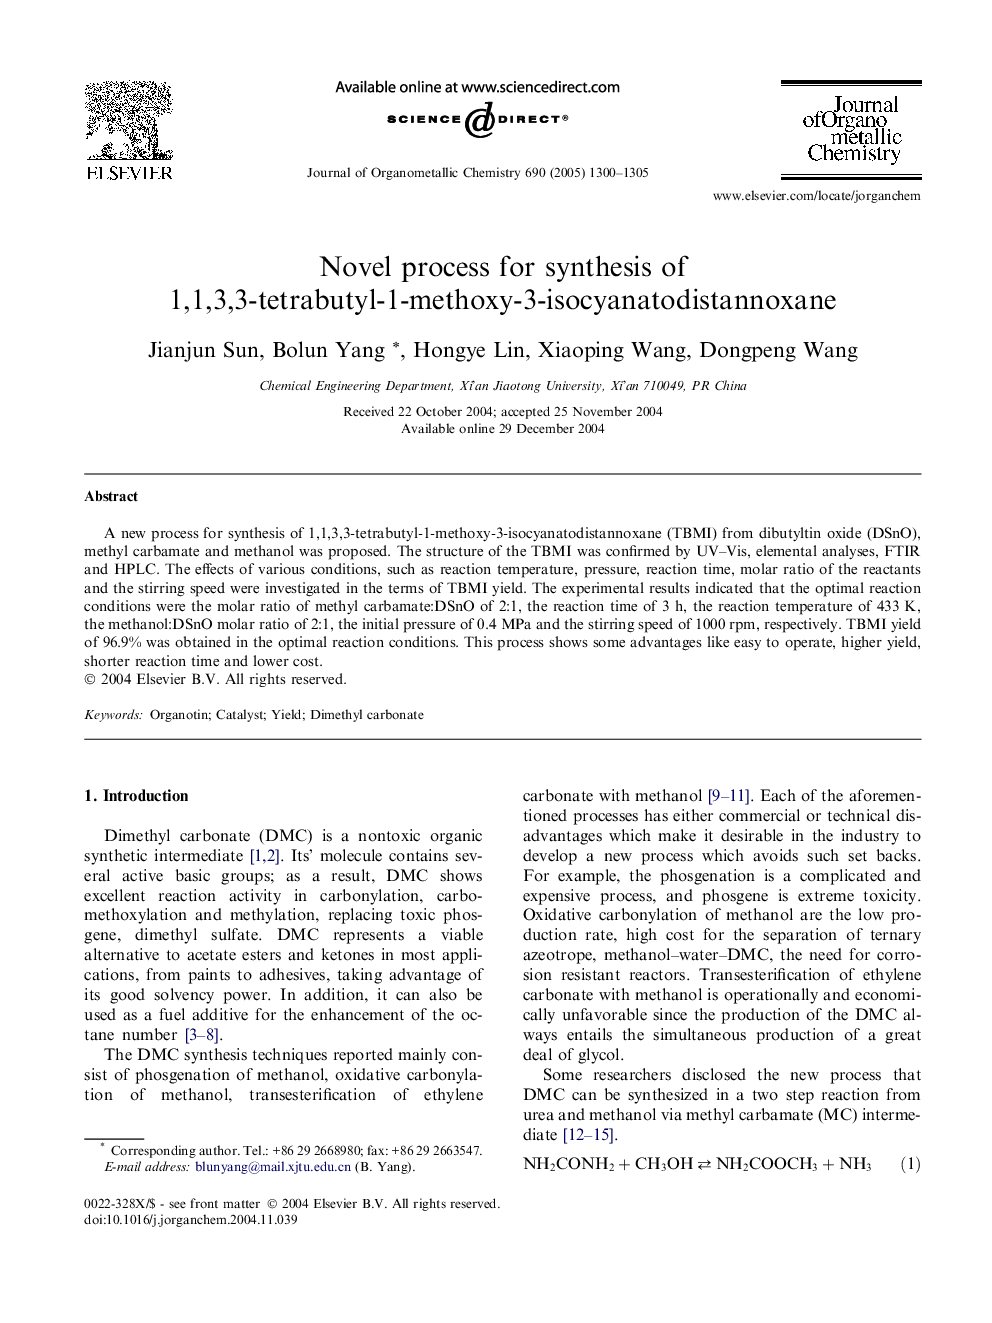 Novel process for synthesis of 1,1,3,3-tetrabutyl-1-methoxy-3-isocyanatodistannoxane